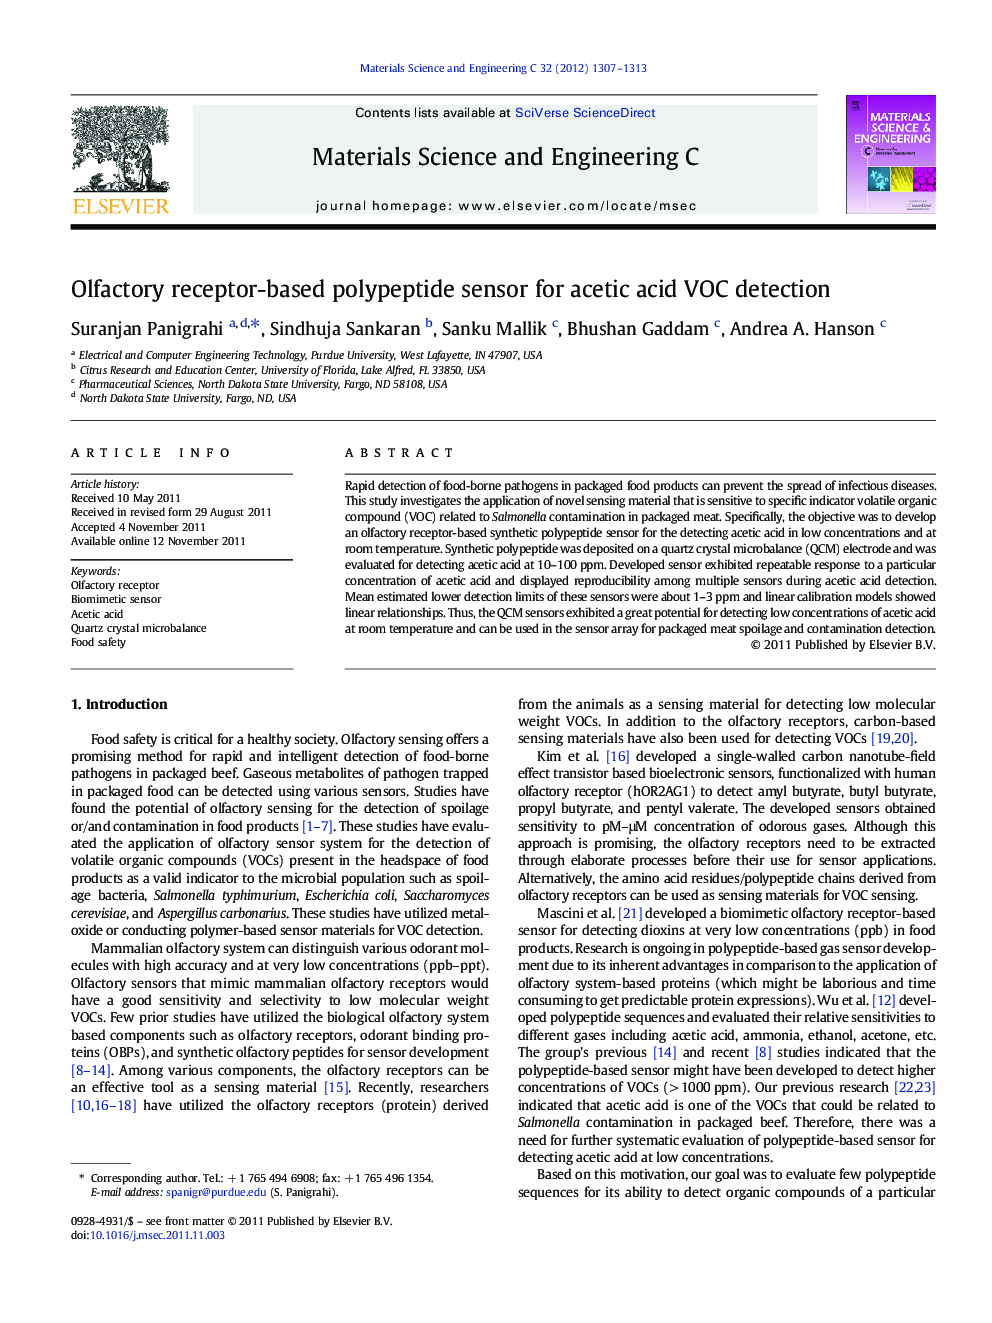 Olfactory receptor-based polypeptide sensor for acetic acid VOC detection